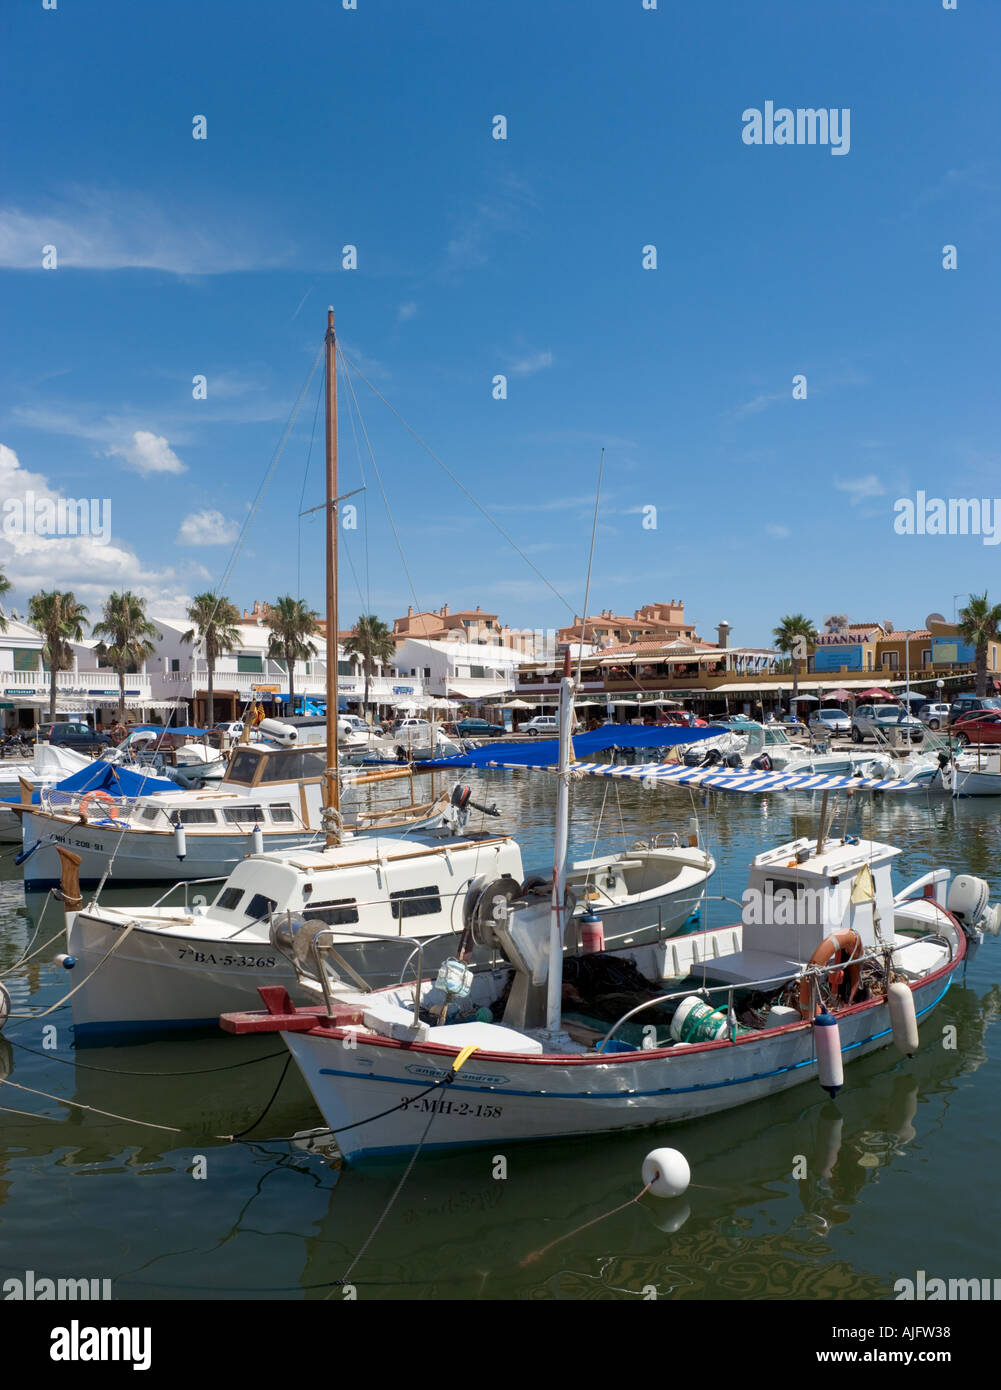 Barche da pesca nel porto di Cala'n Bosch, Menorca, isole Baleari, Spagna Foto Stock